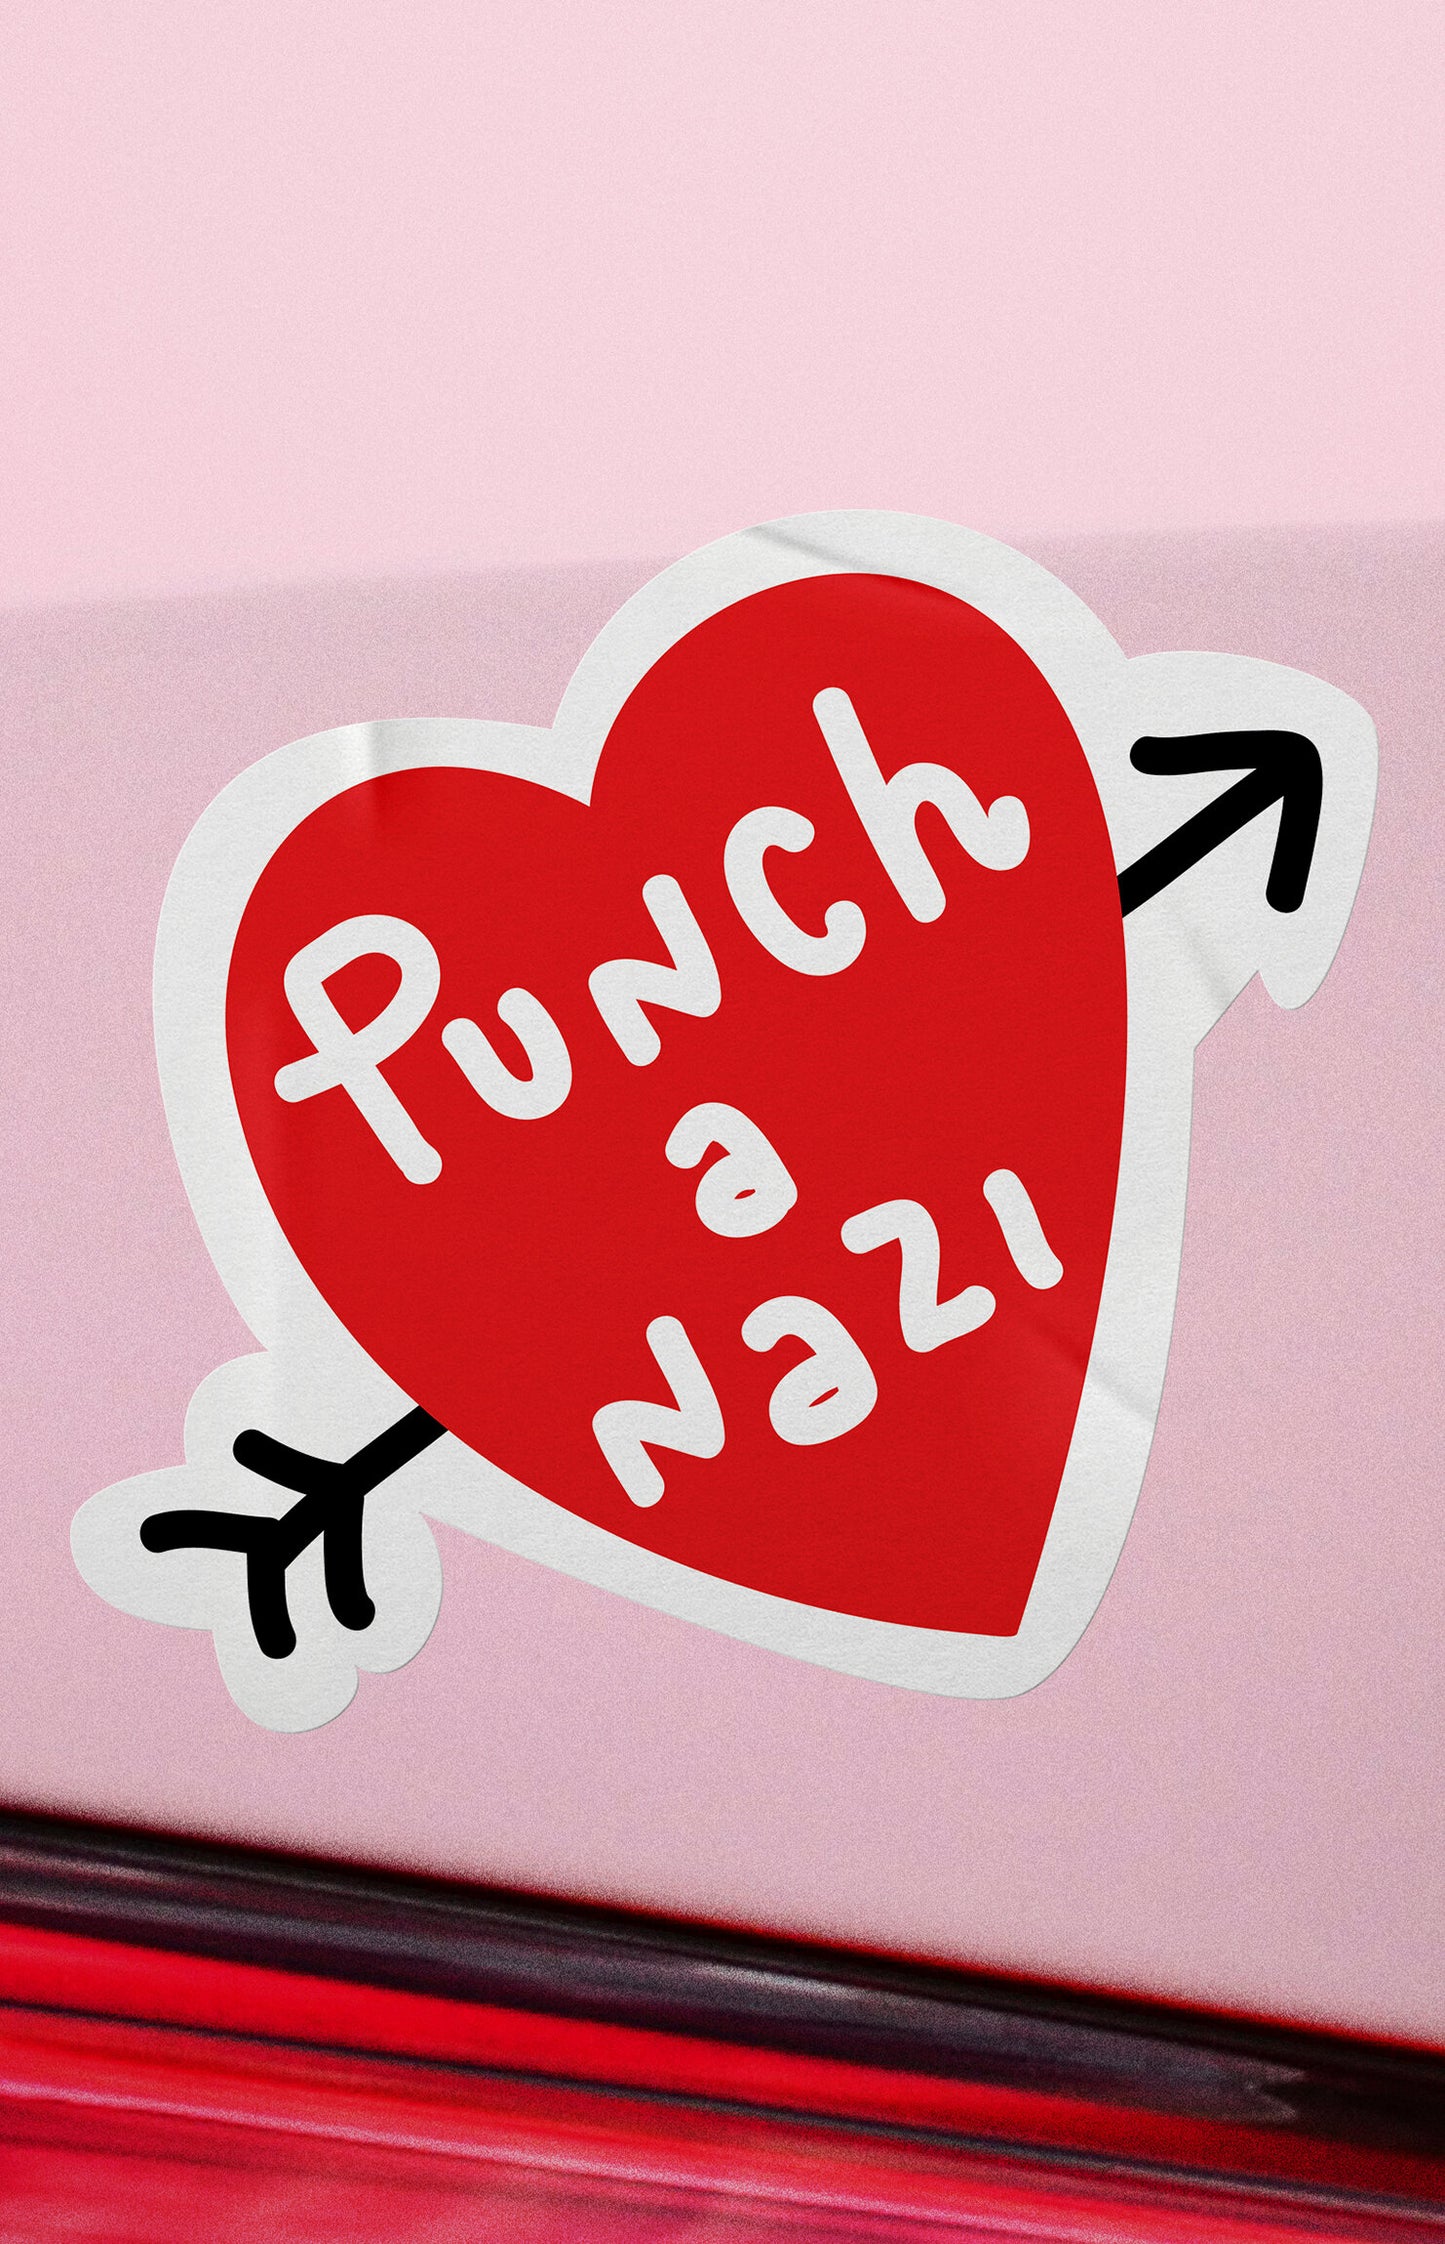 Punch a nazi - sticker